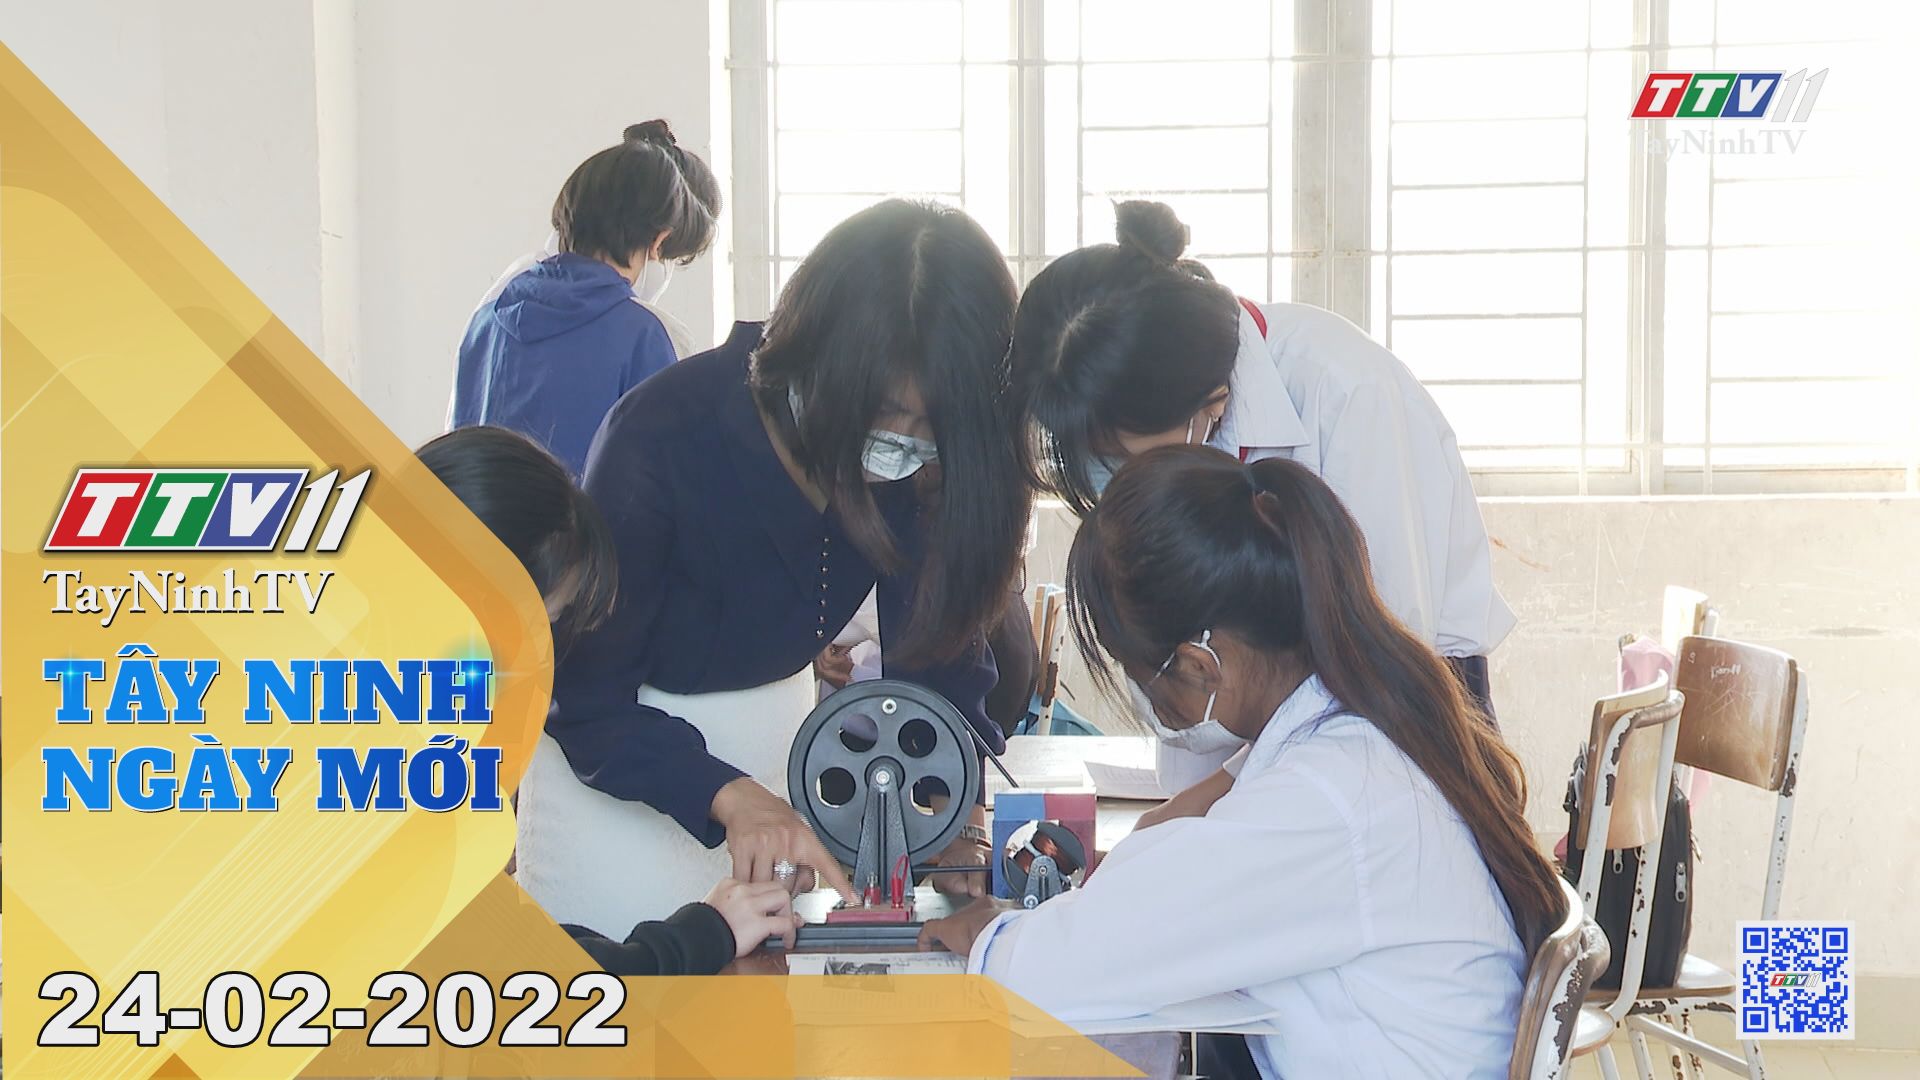 Tây Ninh ngày mới 24-02-2022 | Tin tức hôm nay | TayNinhTV